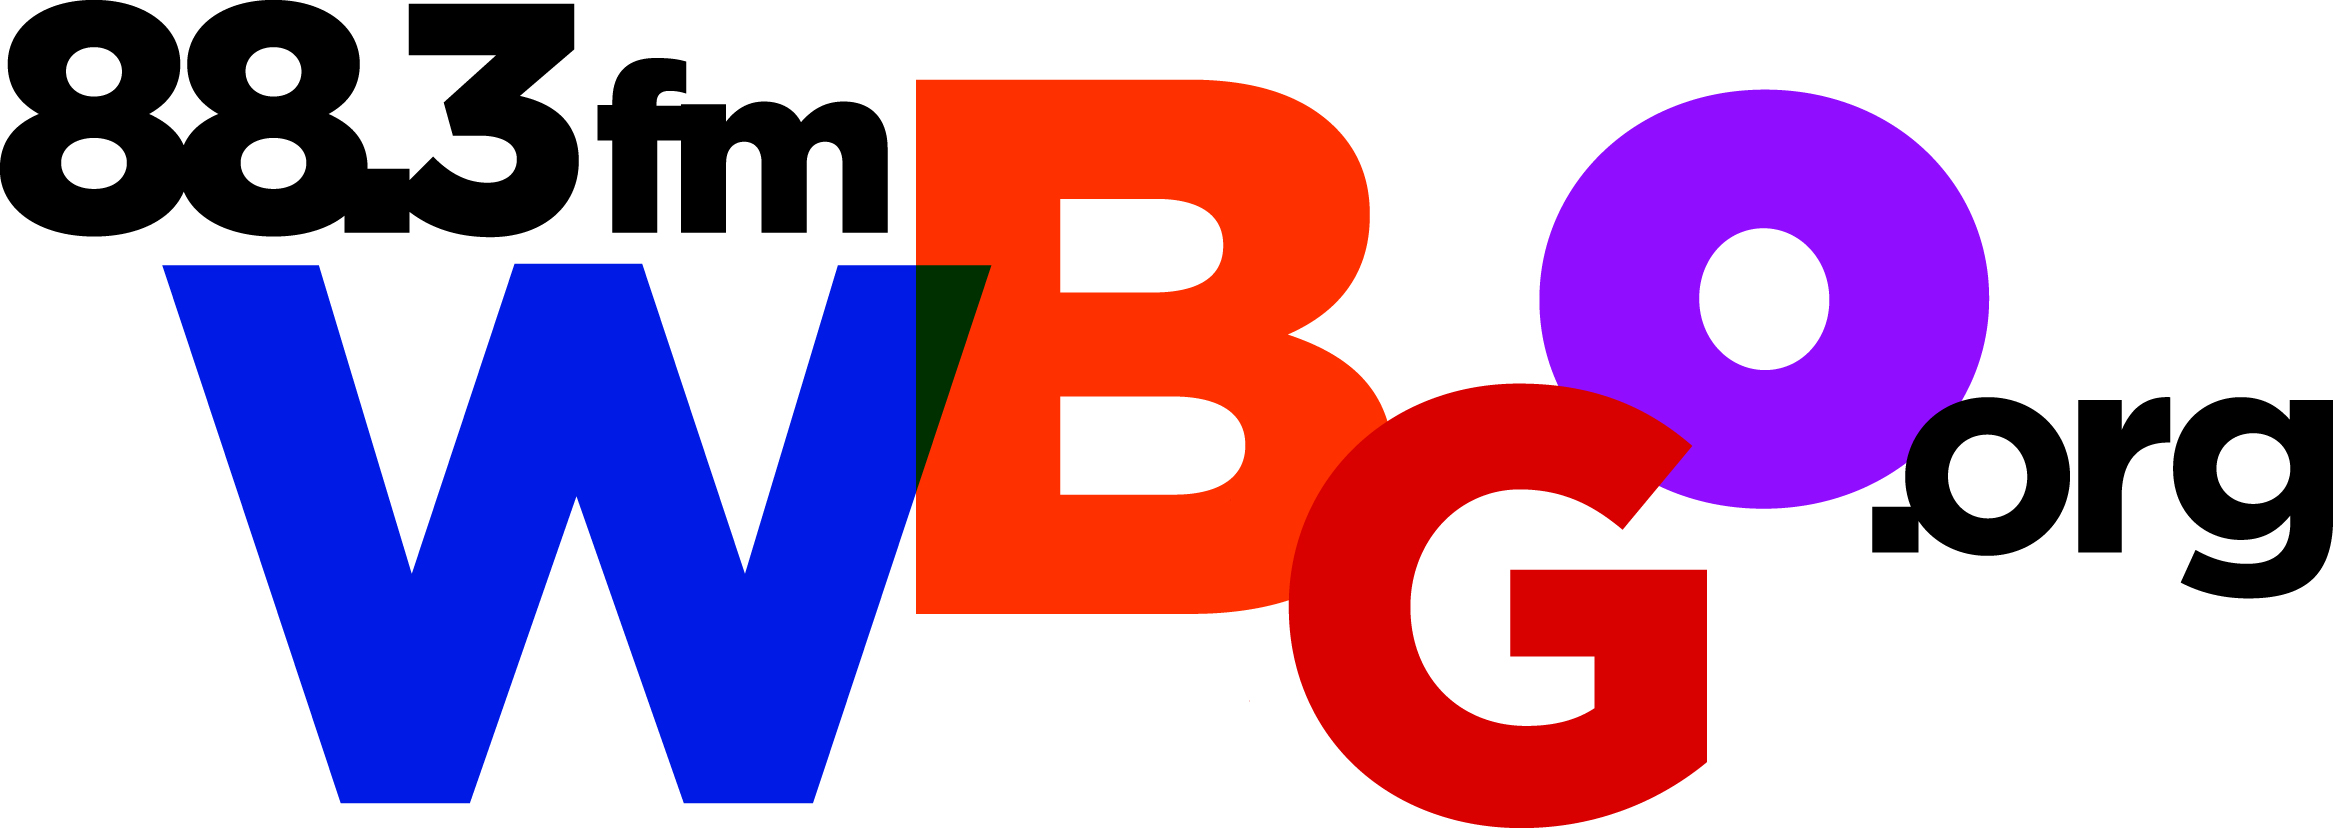 WBGO 88.3 FM - logo